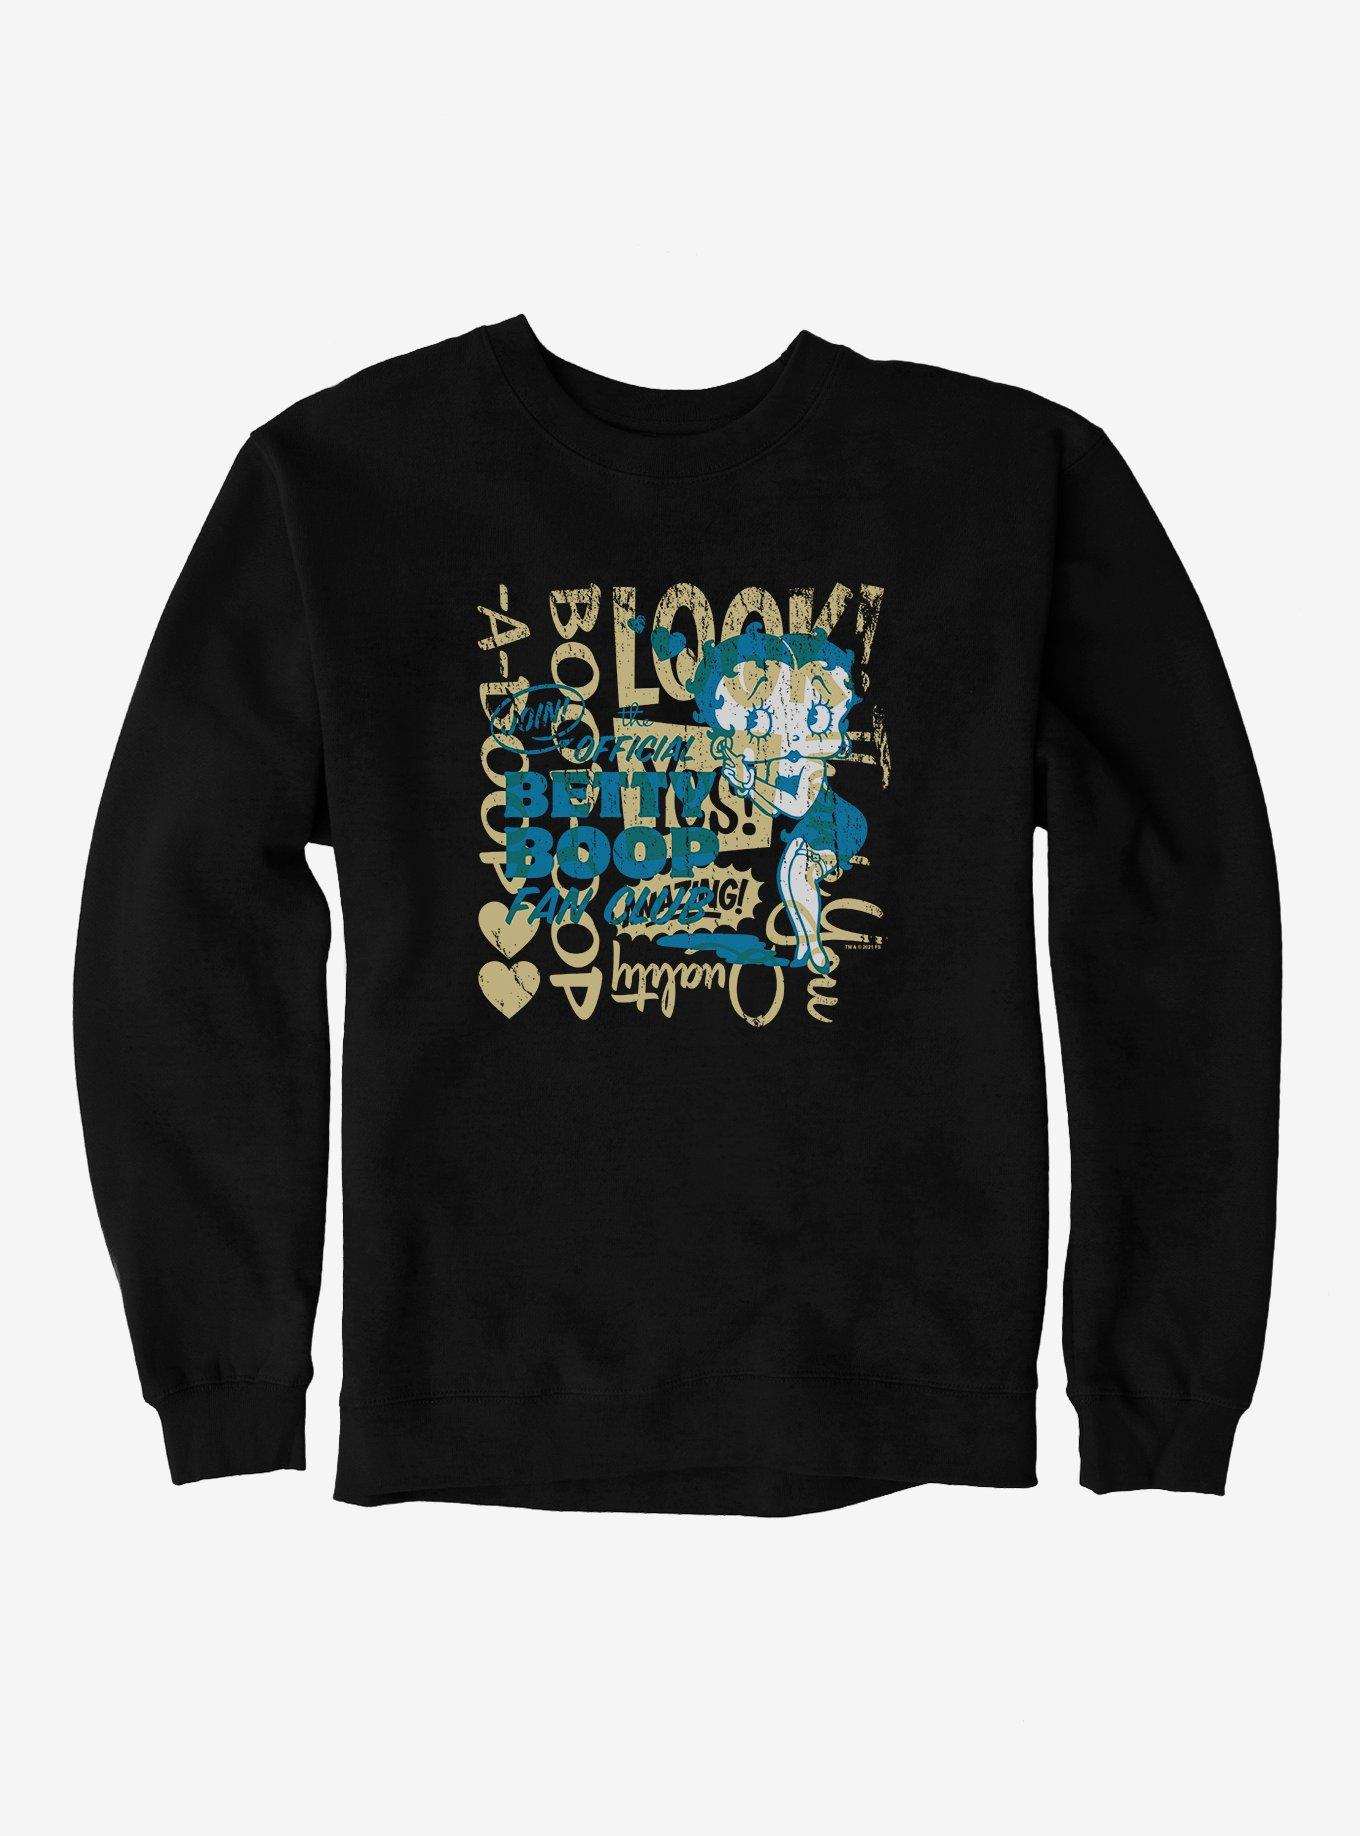 Betty Boop Official Fan Club Sweatshirt